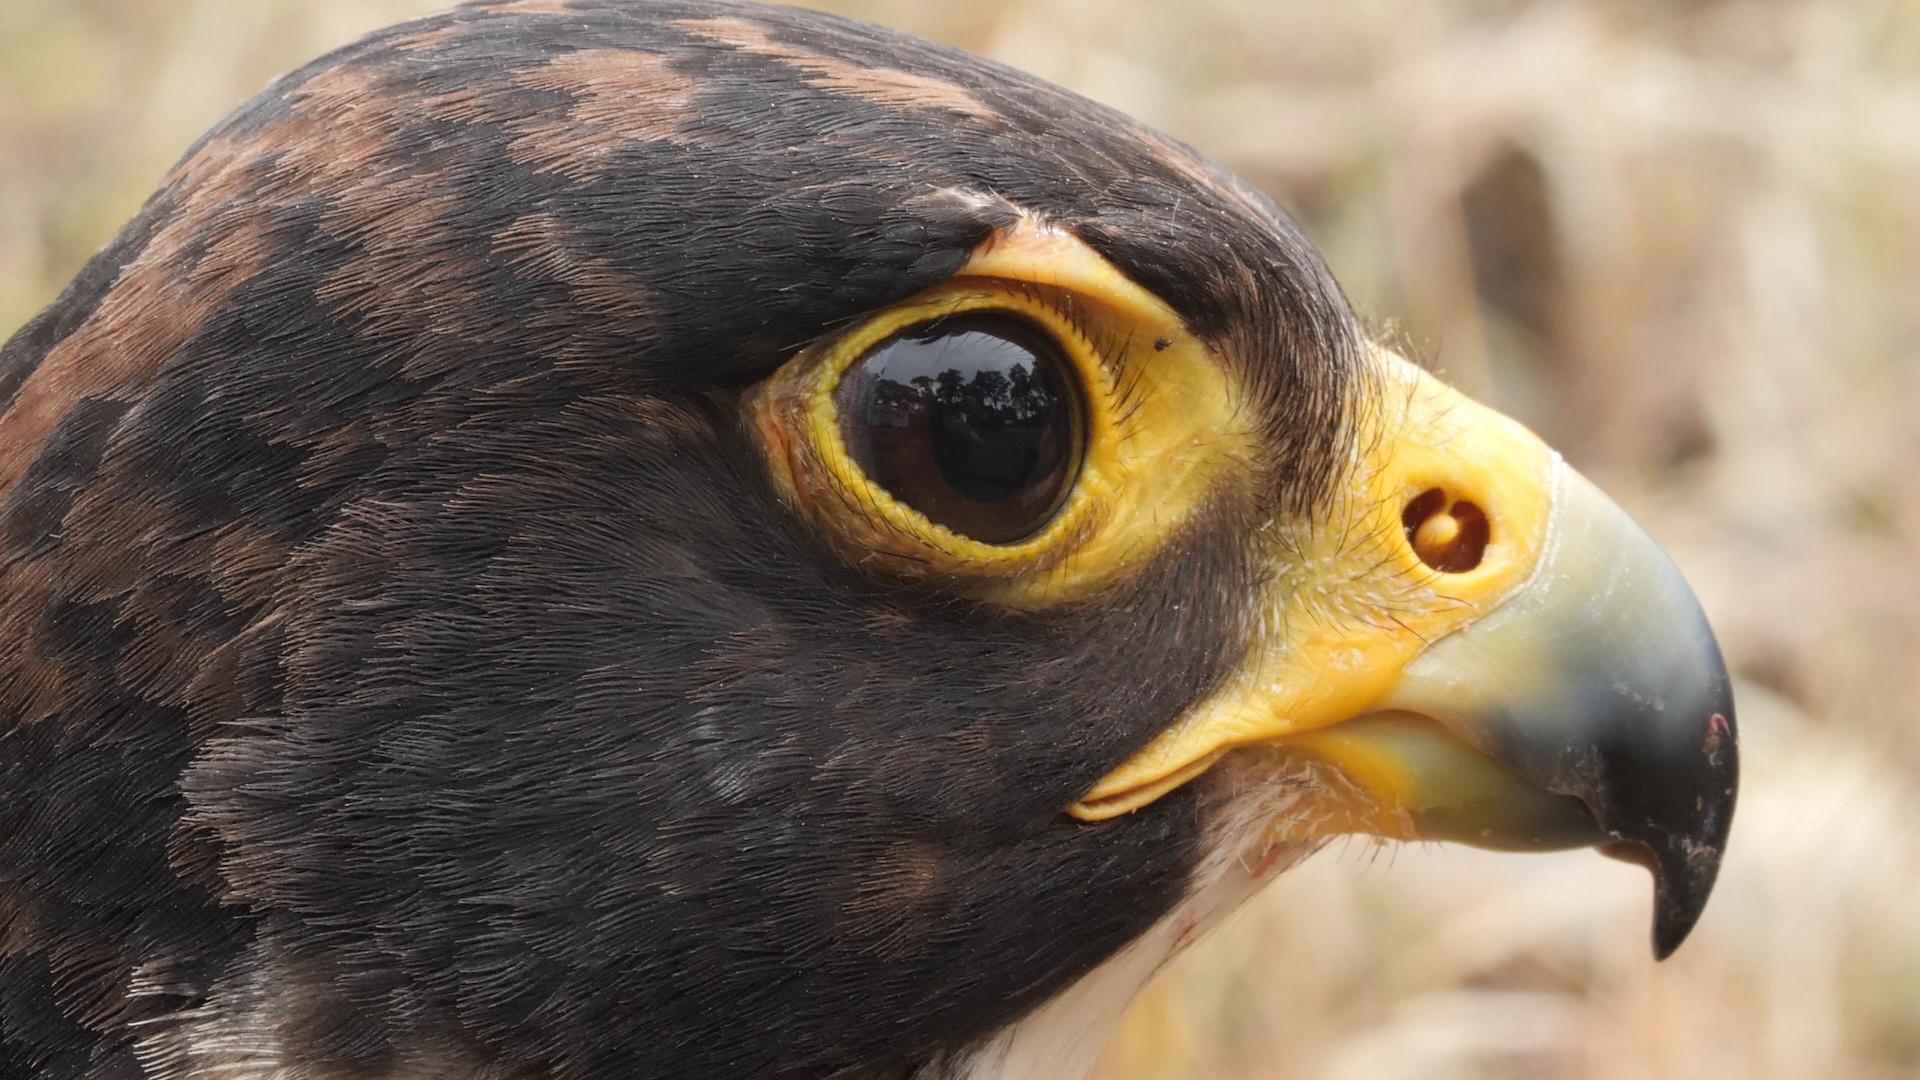 Once endangered, peregrine falcons thrive in Portland's urban landscape,  Audubon finds - oregonlive.com